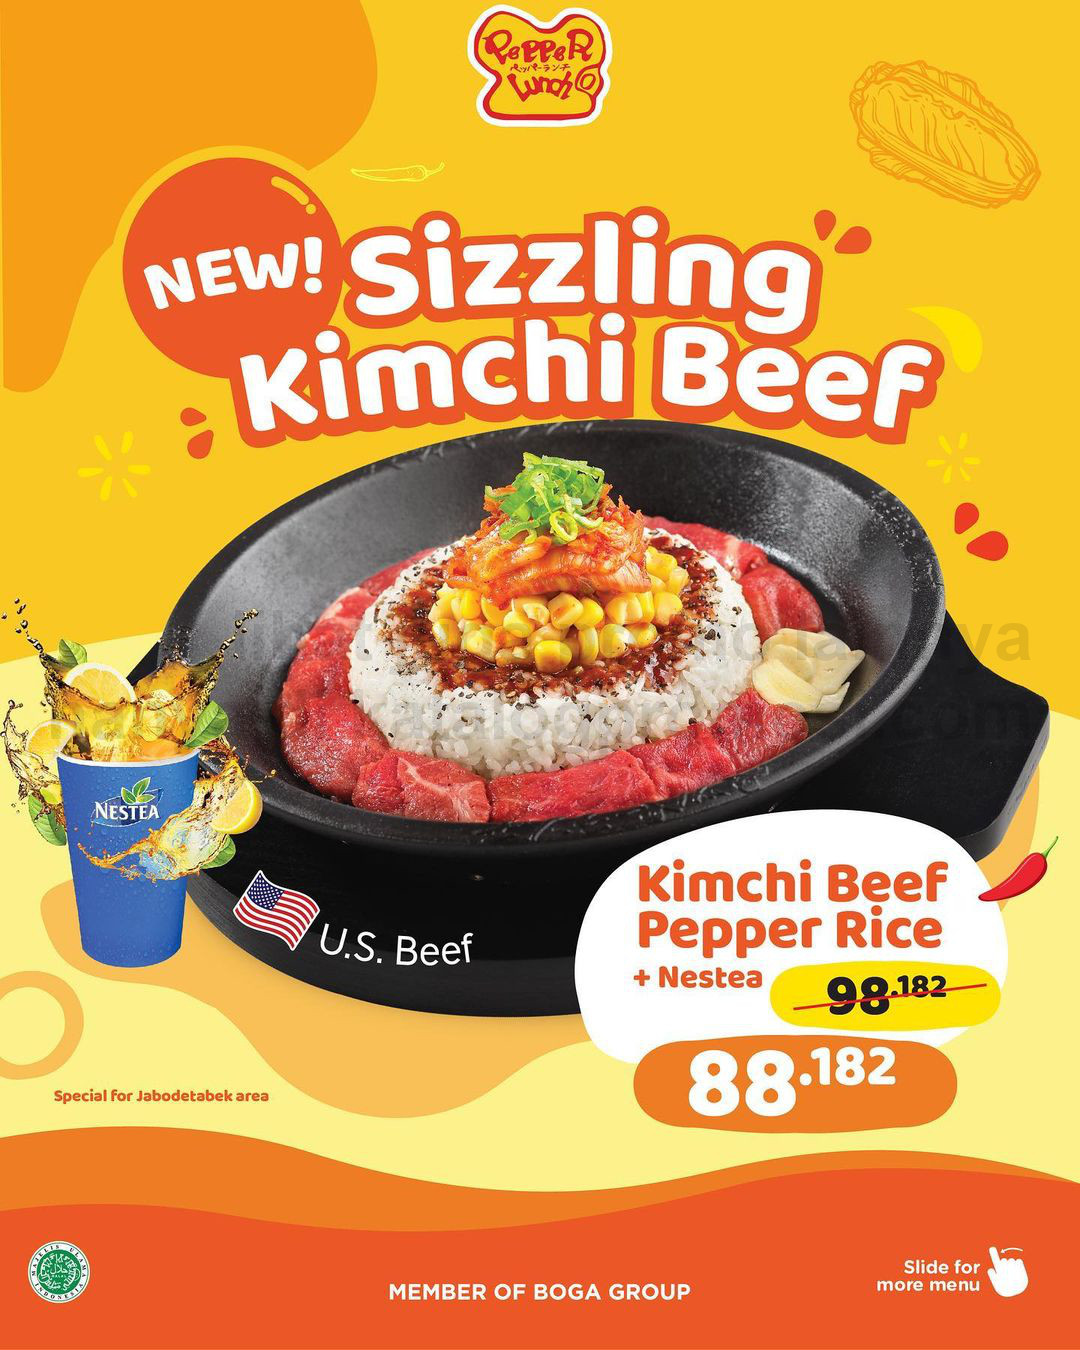 Promo PEPPER LUNCH ! MENU BARU - Sizzling Kimchi Beef